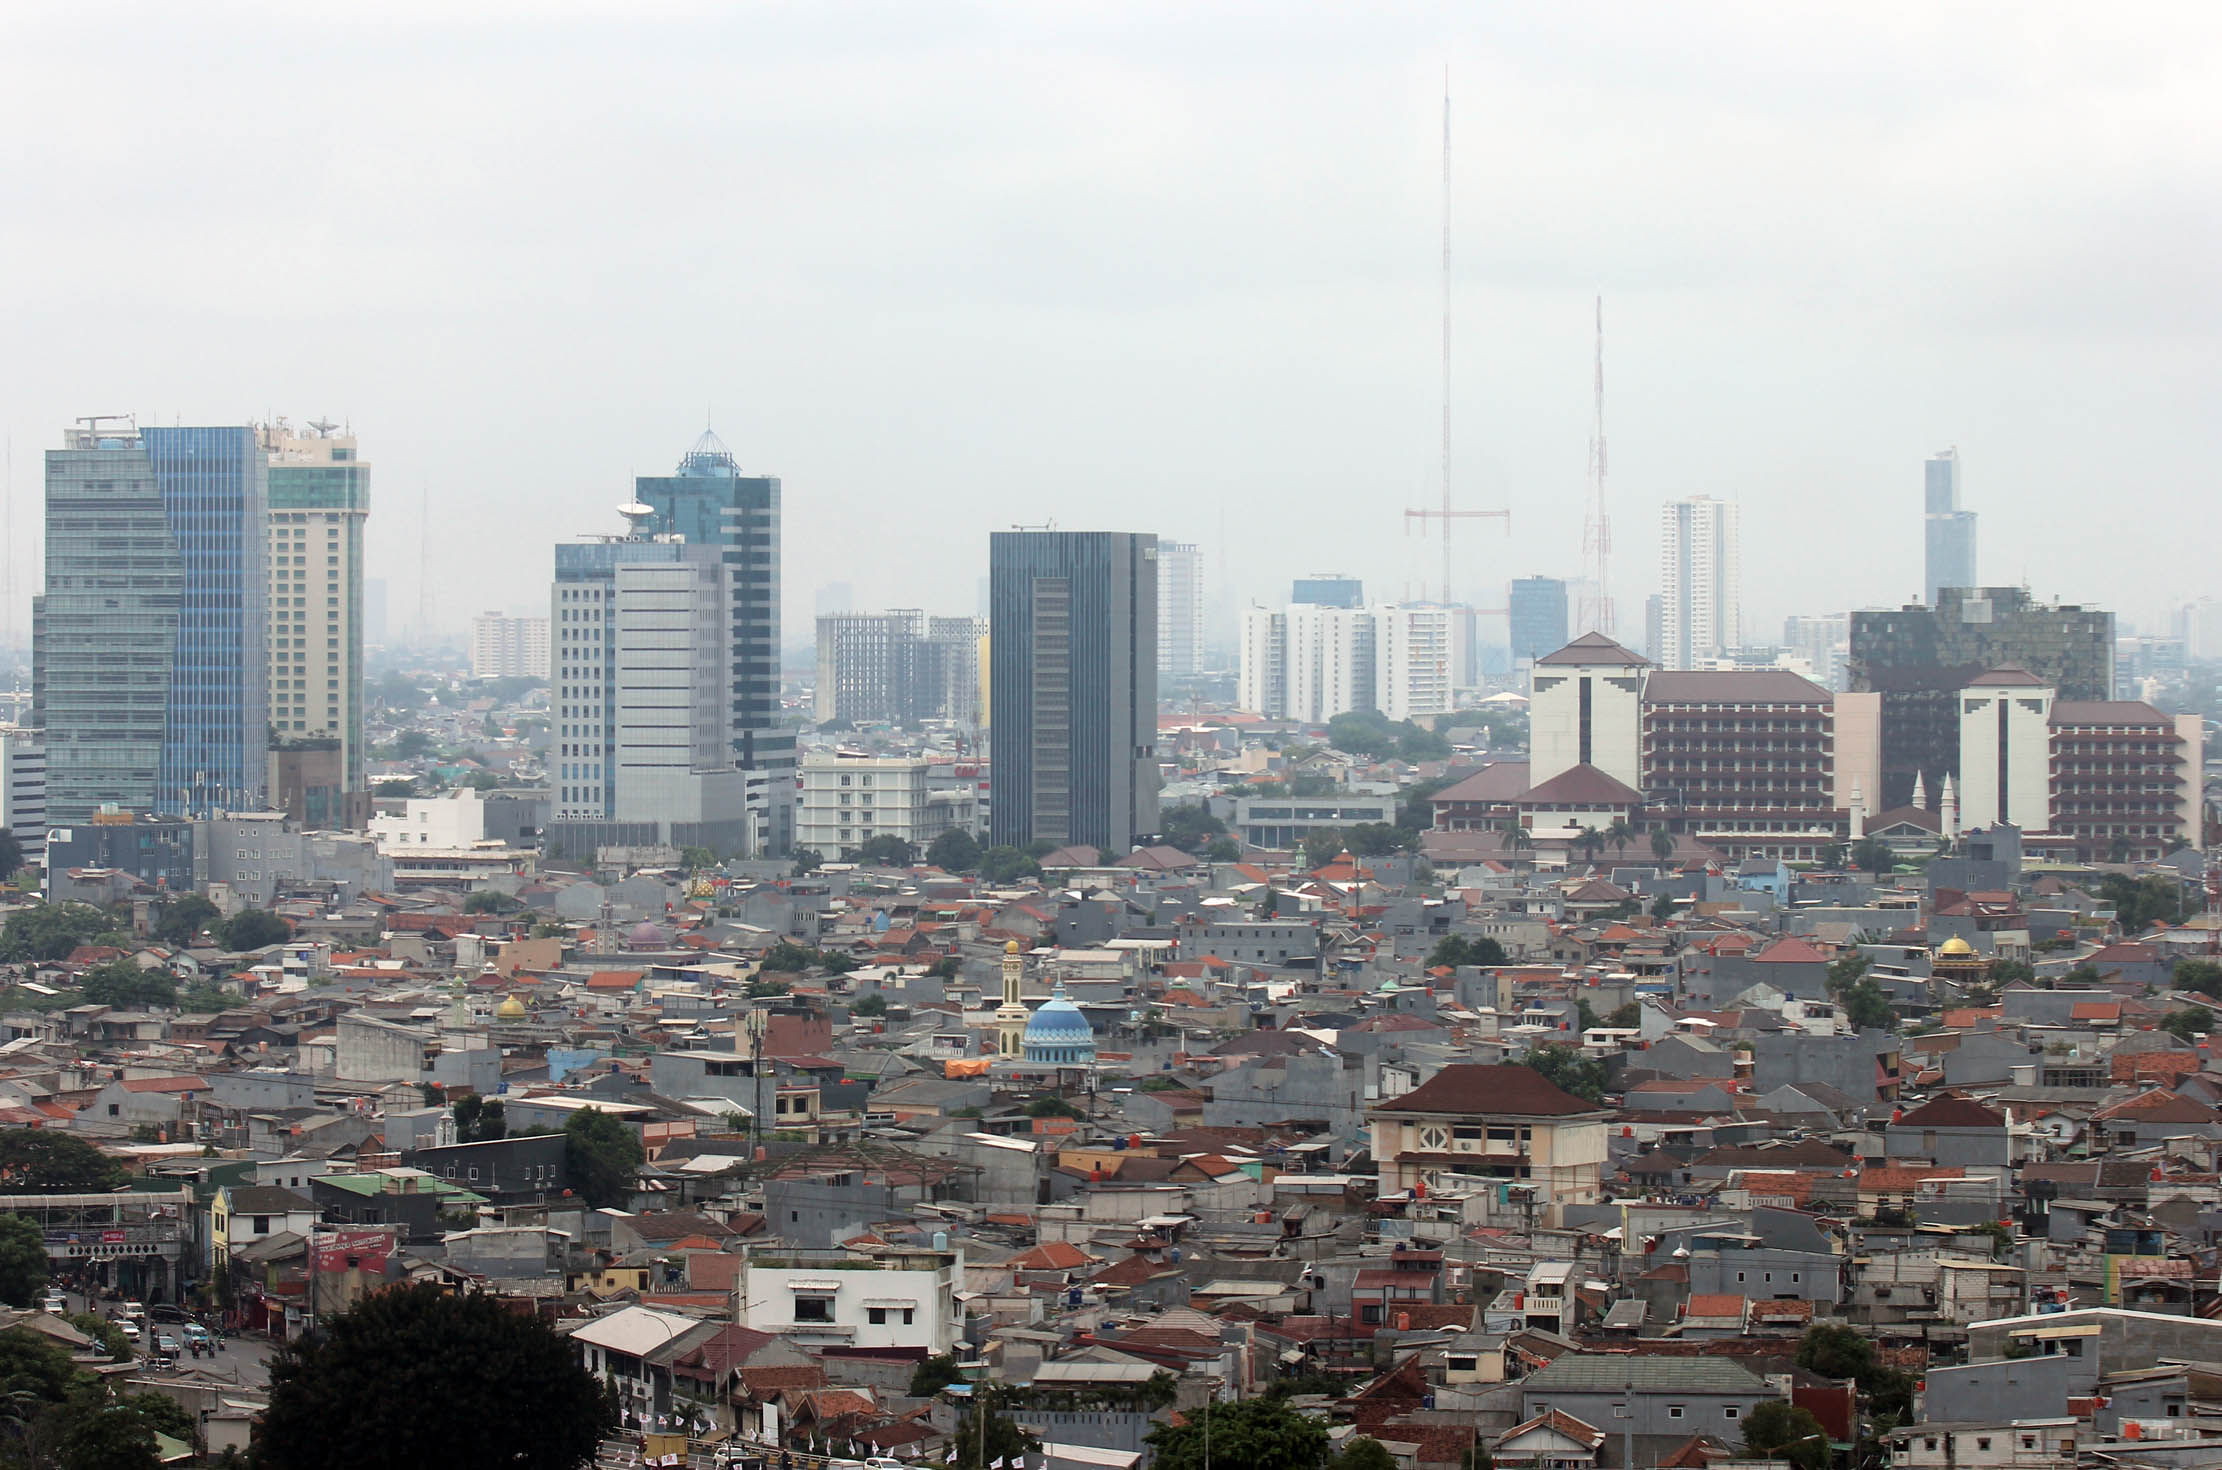 Pemandangan kepadatan Kota Jakarta yg kian hari semakin bertambah dengan pembangunan gedung-gedung dan bangunan baru baik hunian maupun kawasan bisnis, Kamis 2 Februari 2023. Foto : Panji Asmoro/TrenAsia